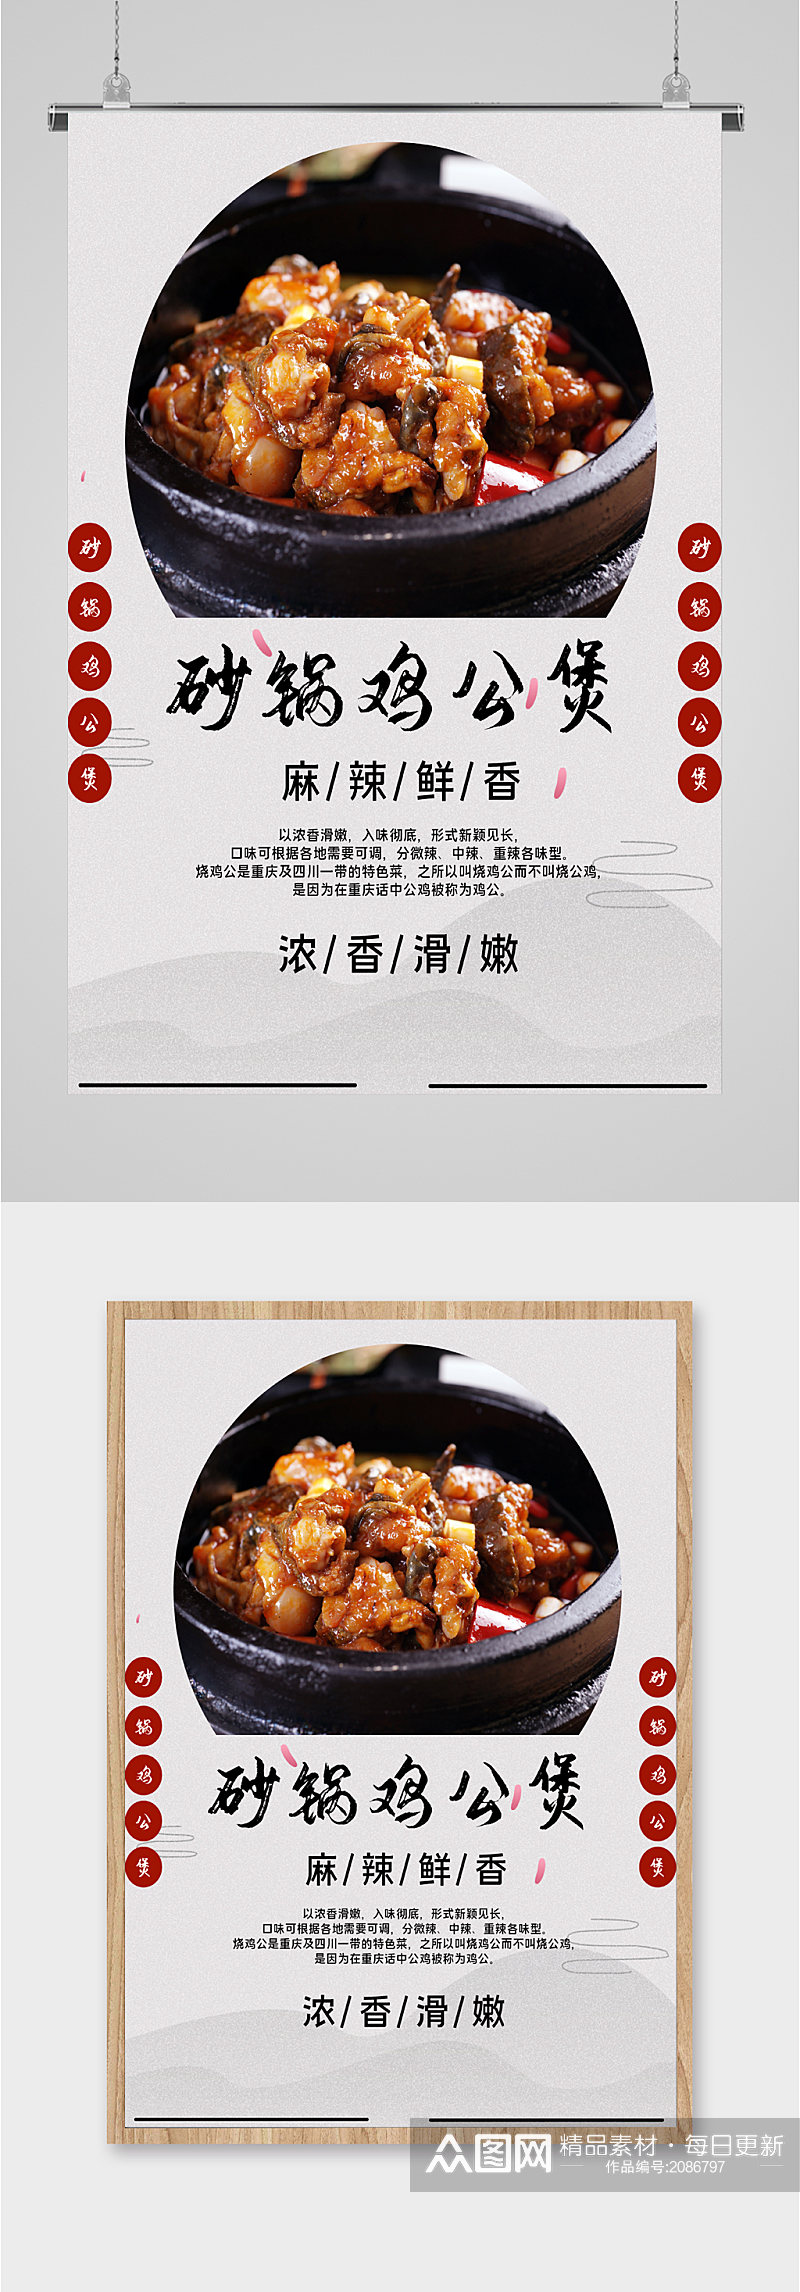 砂锅鸡公煲美食海报素材